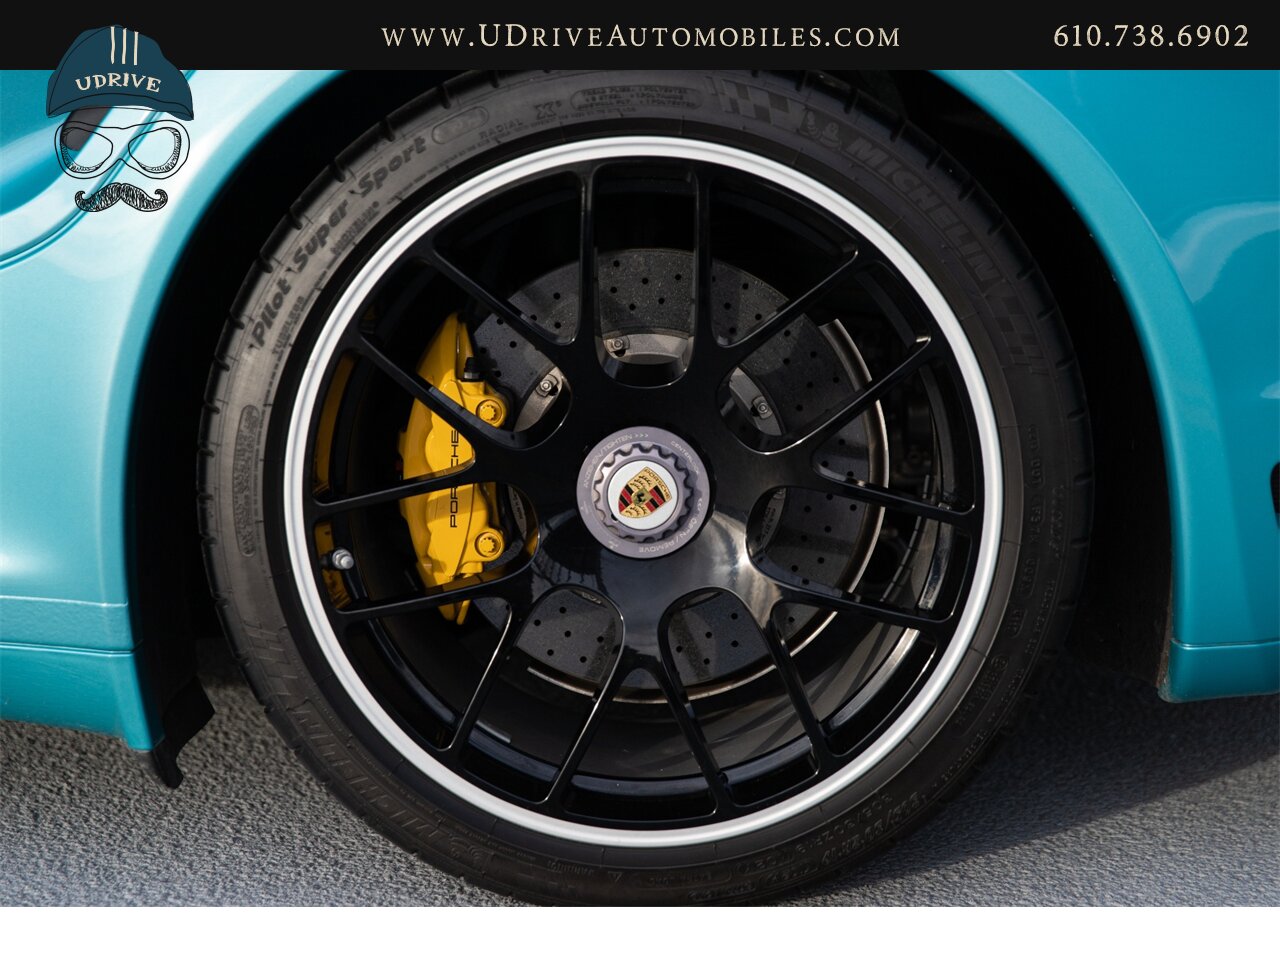 2012 Porsche 911 Turbo S 997.2 RARE Ipanema Blue 13k Miles  Vent Sts Carbon Fiber Pntd Exter Pkg Blk Centerlock Whls $173k MSRP - Photo 48 - West Chester, PA 19382